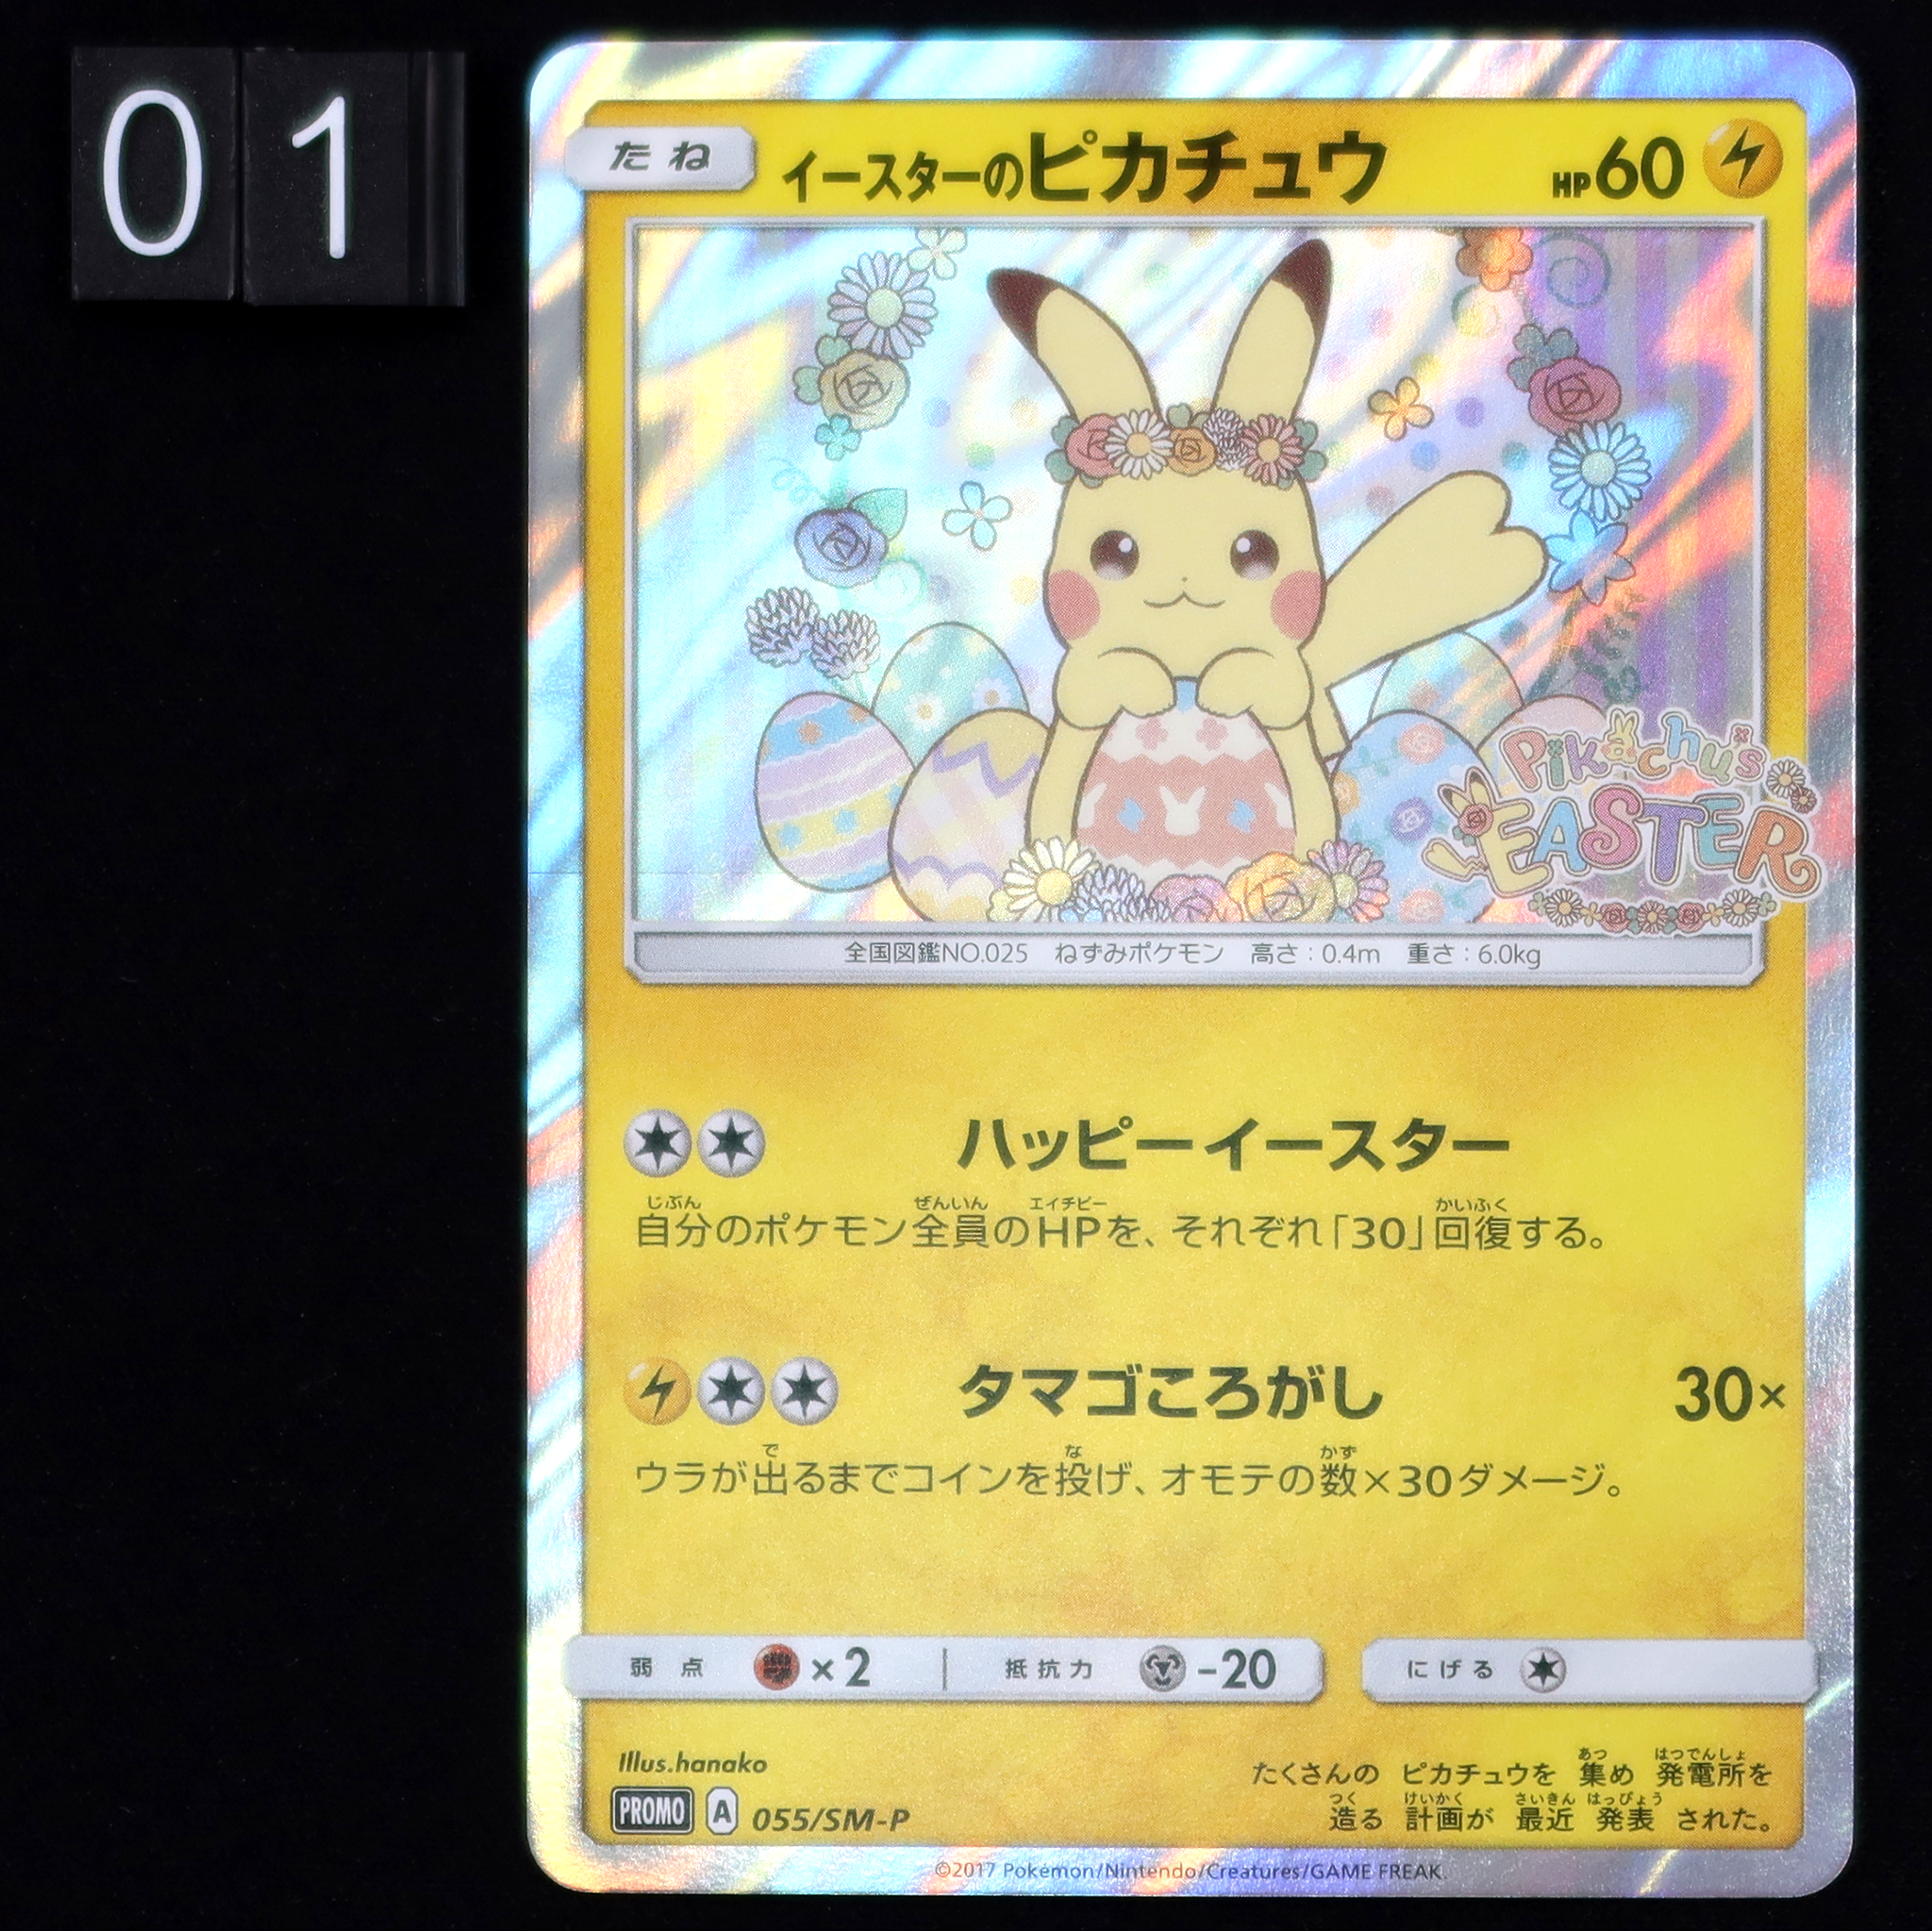 Pokémon card juego/PK-SM-P-237